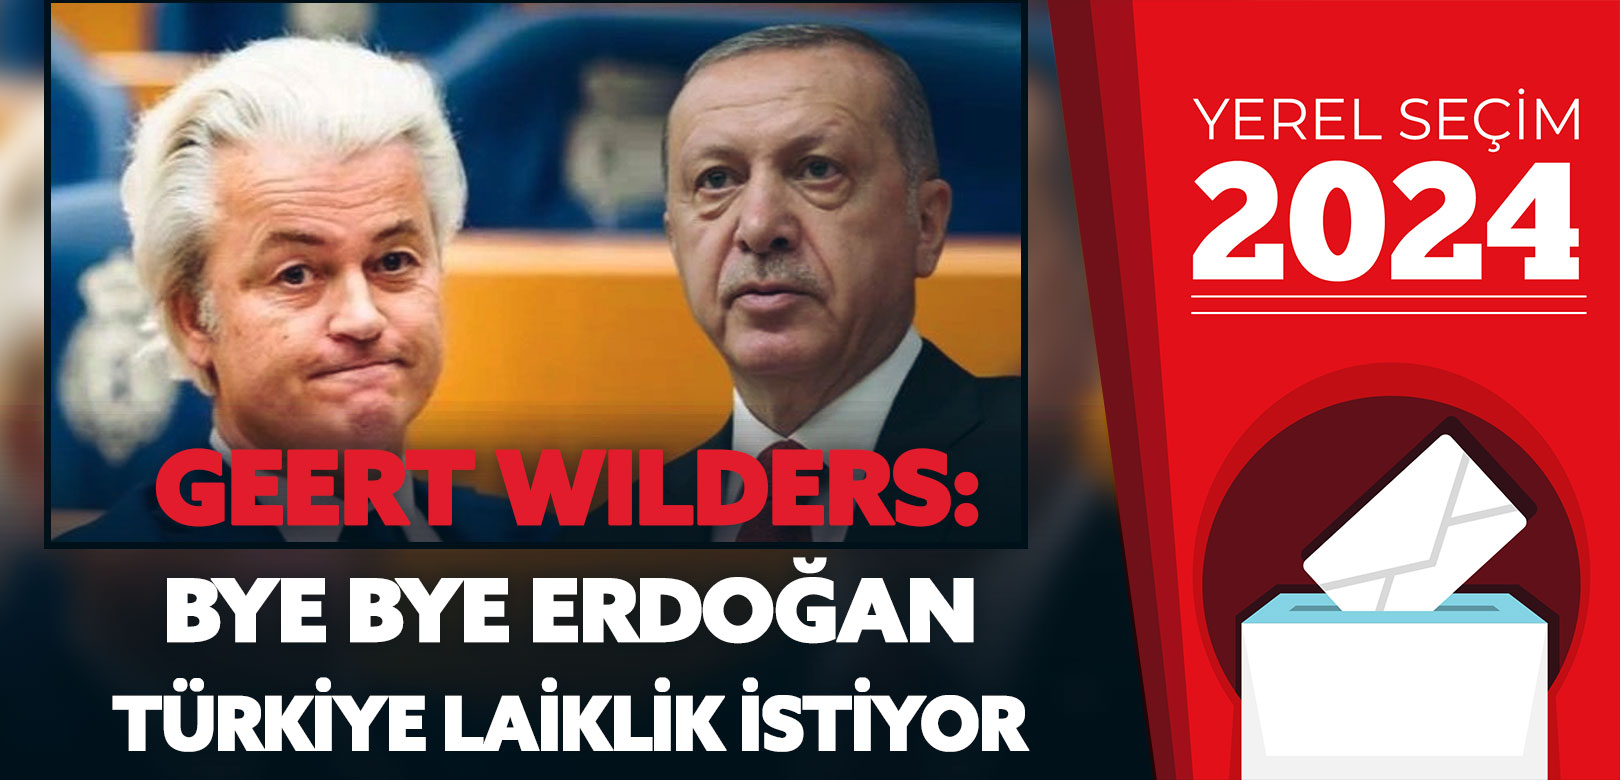 Hollanda'nın eski Başbakanı Geert Wilders: Bye Bye Erdoğan